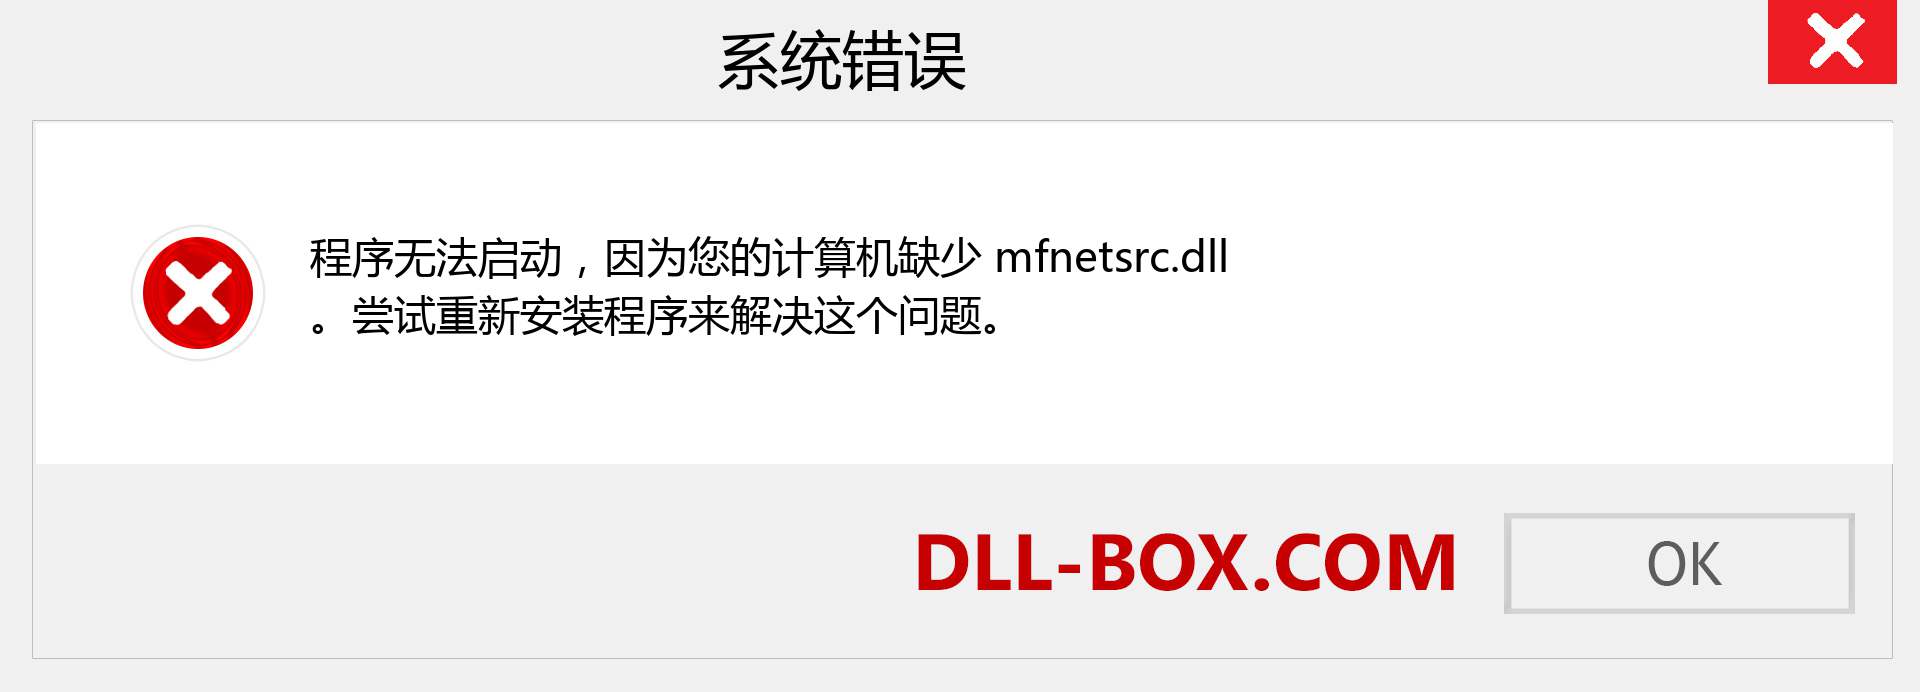 mfnetsrc.dll 文件丢失？。 适用于 Windows 7、8、10 的下载 - 修复 Windows、照片、图像上的 mfnetsrc dll 丢失错误